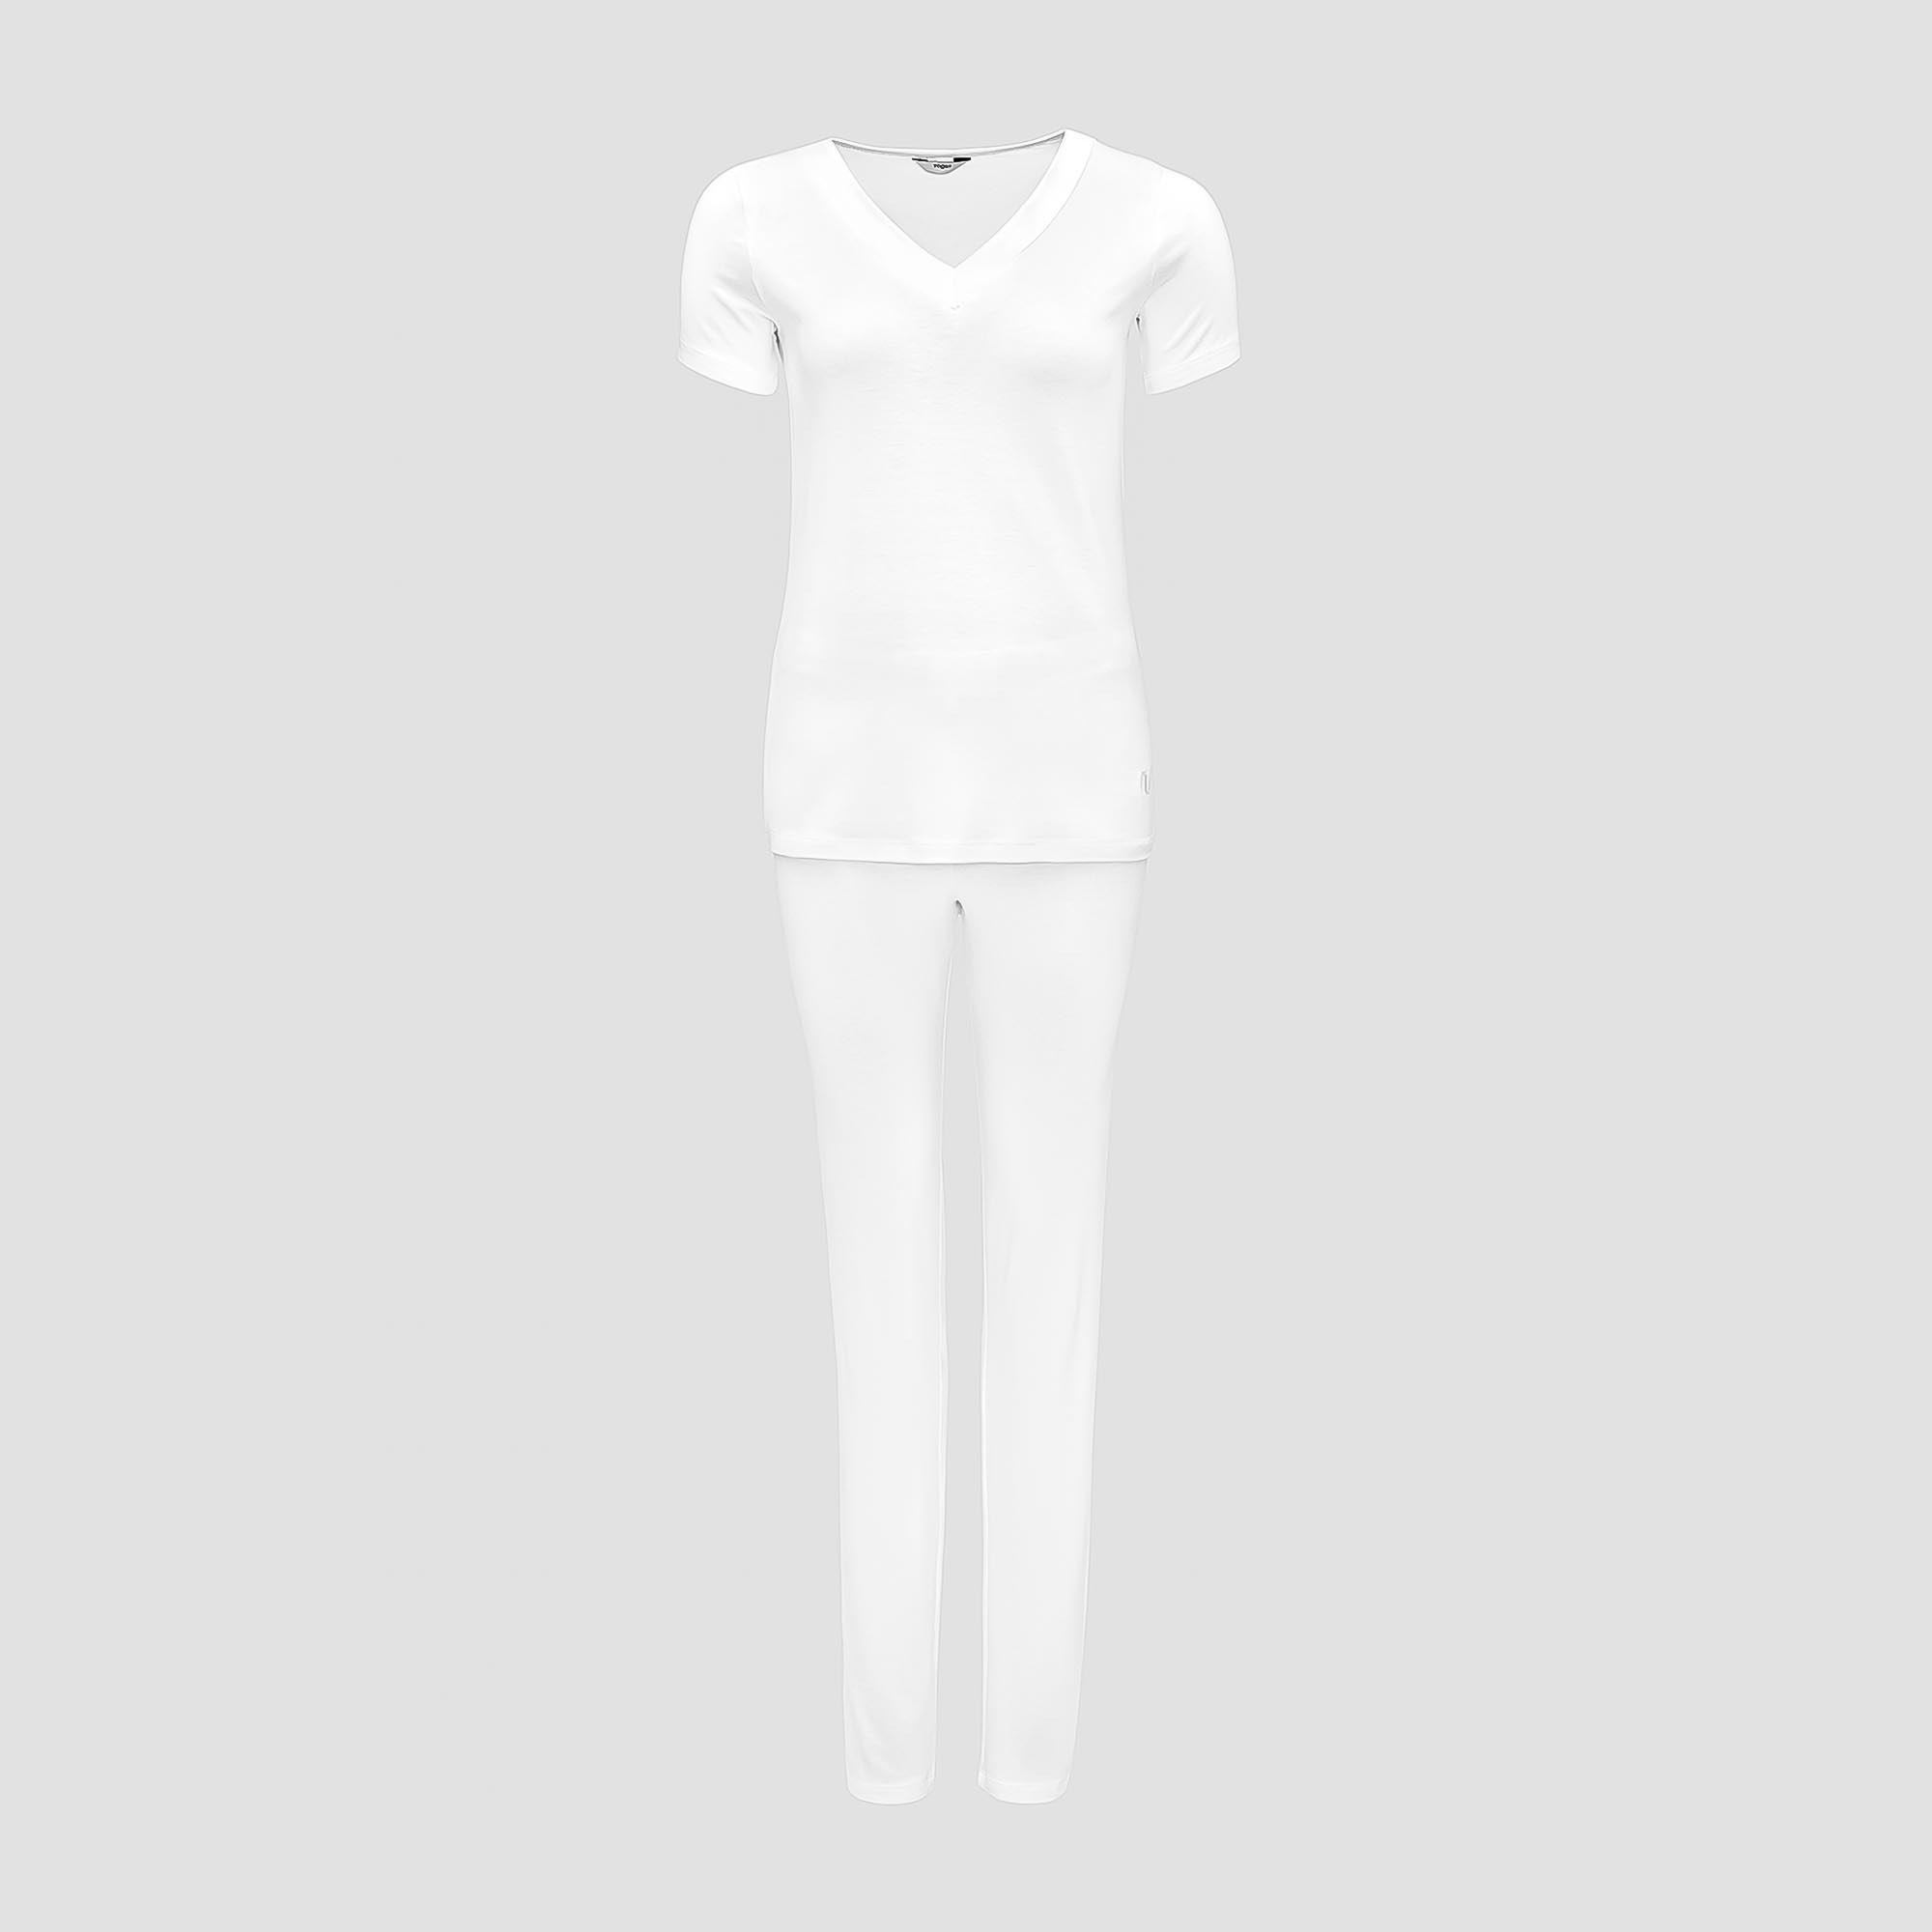 Пижама Togas Ингелла белая женская M(46) 2 предмета пижама togas ингелла белая женская m 46 2 предмета